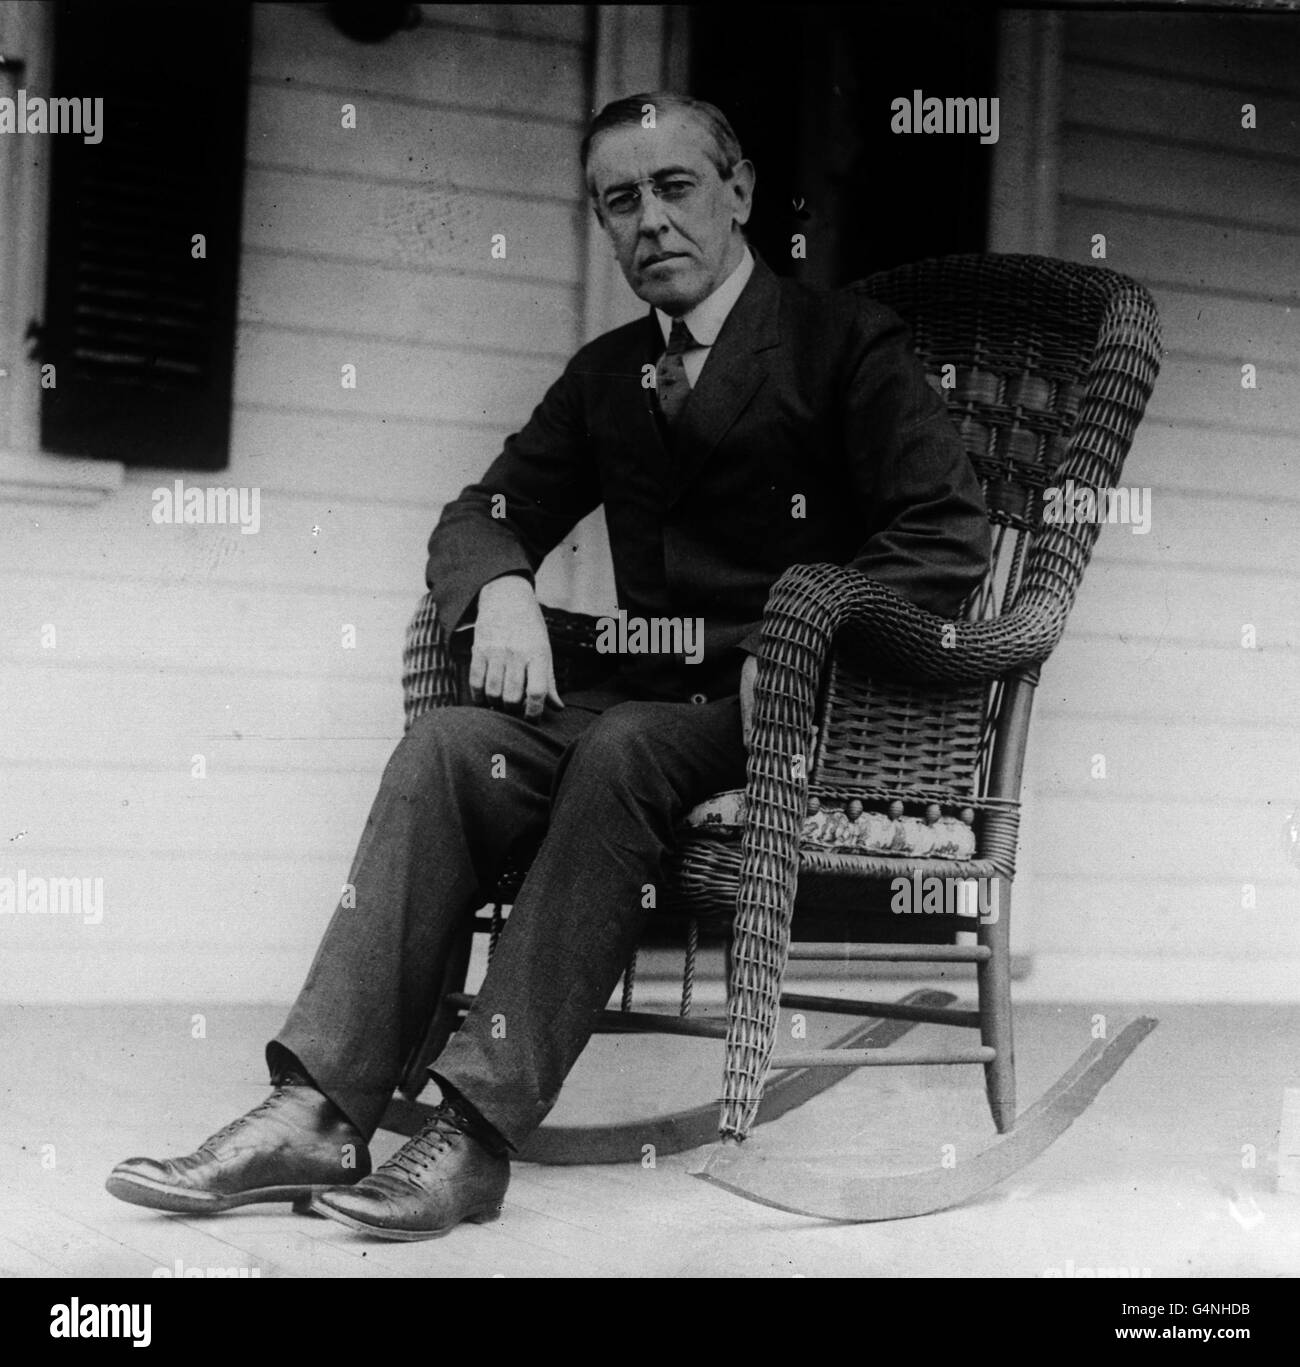 10/10/1913 - an diesem Tag in der Geschichte - hat US-Präsident Woodrow Wilson die Explosion ausgelöst, die den Gamboa-Staudamm in Panama sprengte. Die atlantischen und pazifischen Gewässer vermischten sich. Der Bau des Panamakanals war zu Ende. 3. FEBRUAR: An diesem Tag im Jahr 1924 starb der ehemalige US-Präsident Woodrow Wilson. Präsident Woodrow Wilson aus den USA, der das Land in den Ersten Weltkrieg führte. Stockfoto